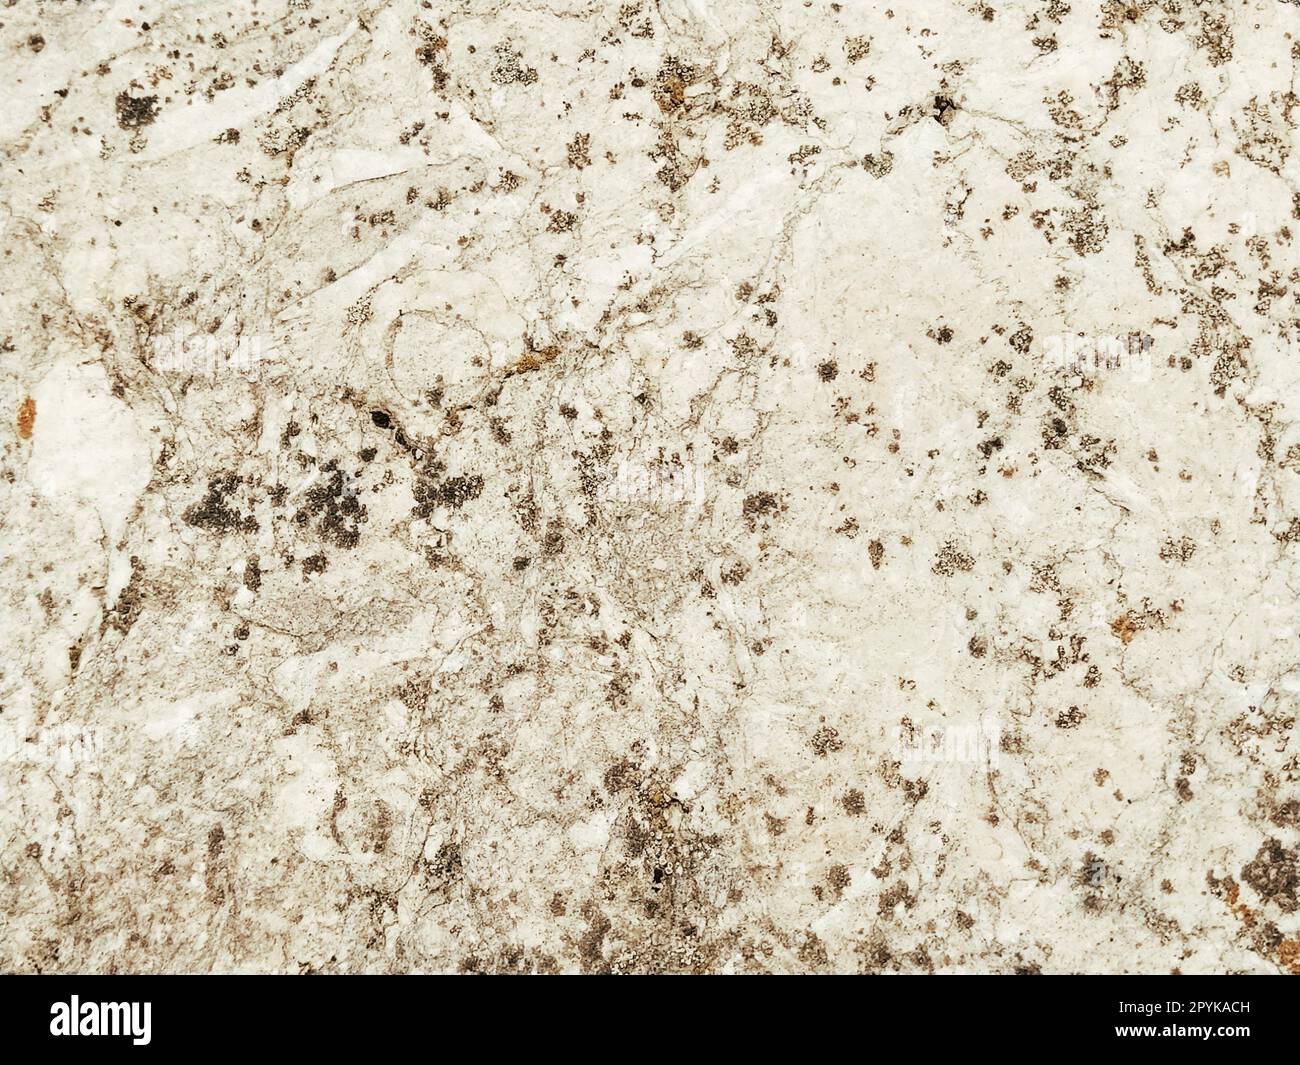 Superficie ruvida di una parete in cemento, marmo o pietra chiara con macchie scure. Sfondo astratto. Sfondo creativo grigio chiaro con pezzi di muschio, sporco e polvere rossi e marroni. Foto Stock